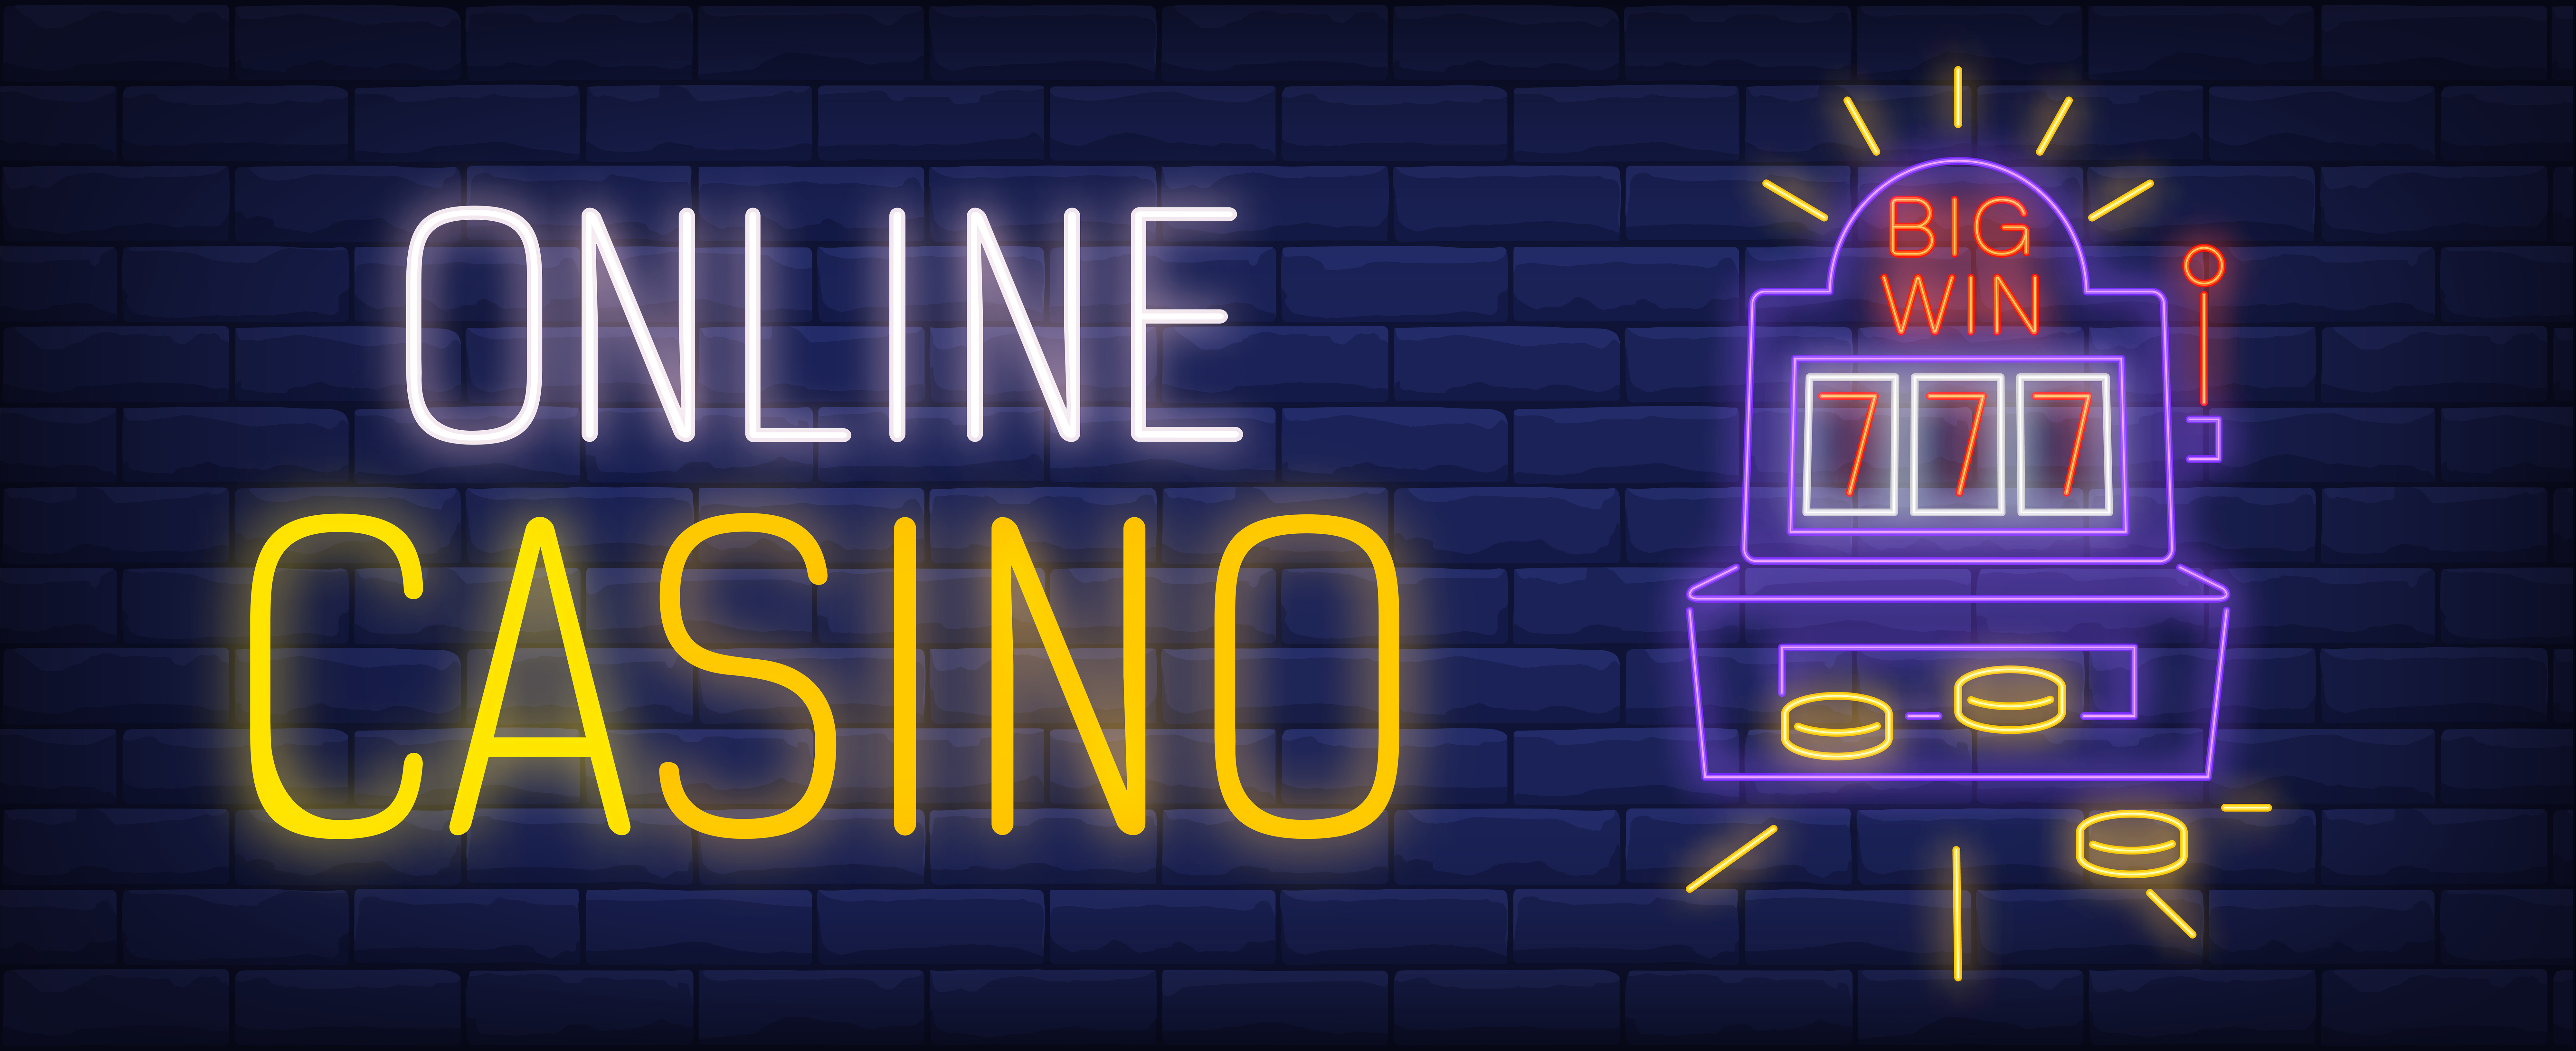 bonus putaran gratis kasino online